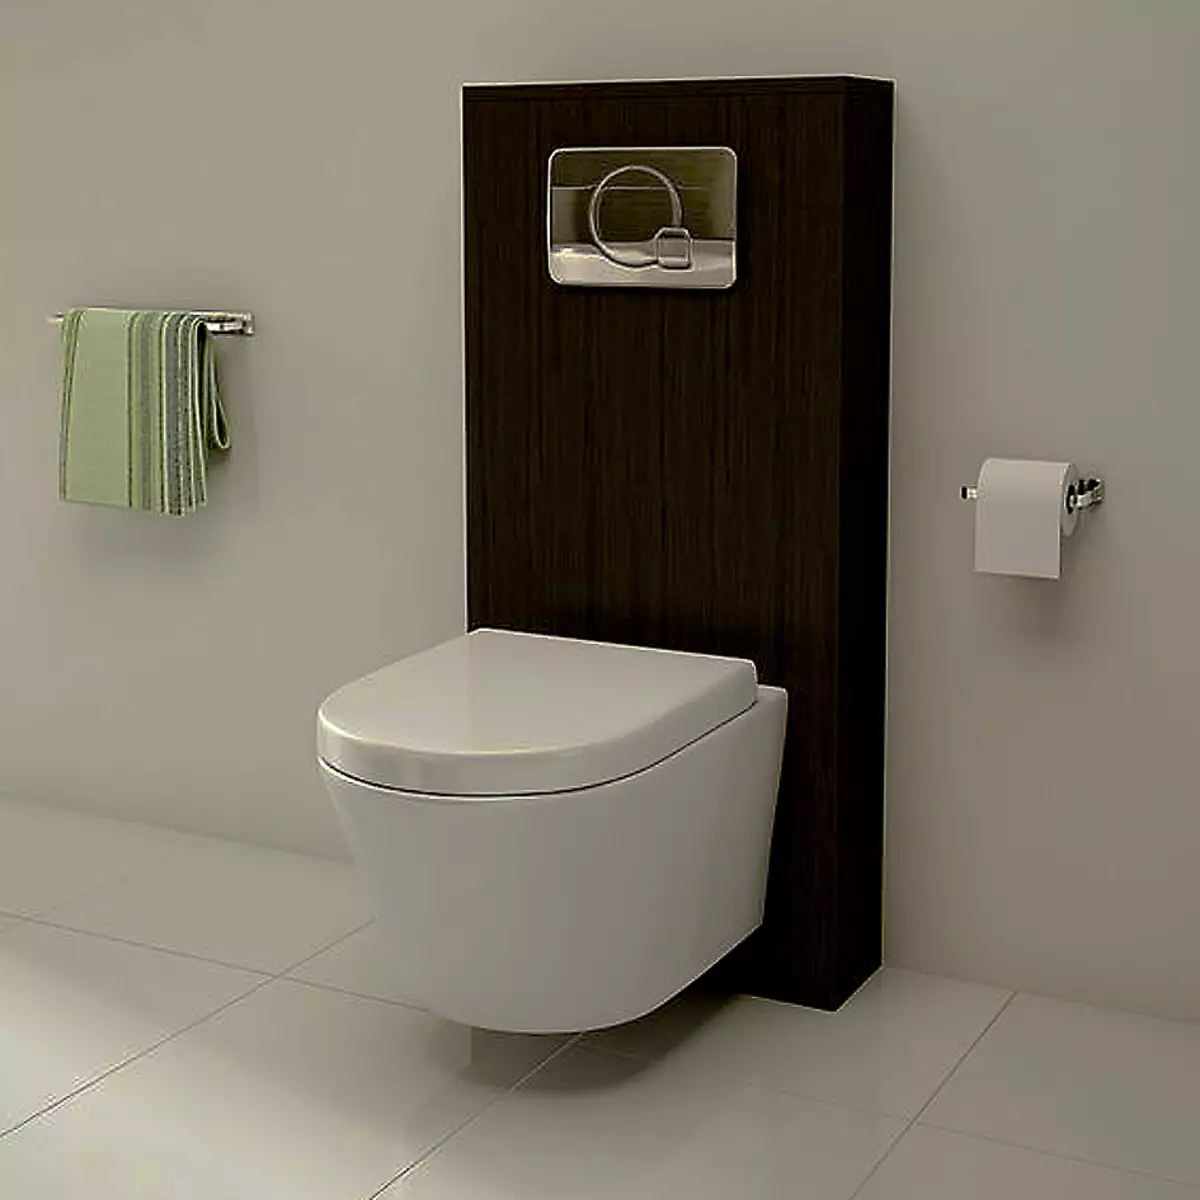 Μπολ τουαλέτας με πλάγια απελευθέρωση: Εισαγόμενη έδραξη Unitaz-Compact, Edition Corner, Καλώδιο συμπαγής τουαλέτα και άλλα μοντέλα με λοξή απελευθέρωση 10523_15